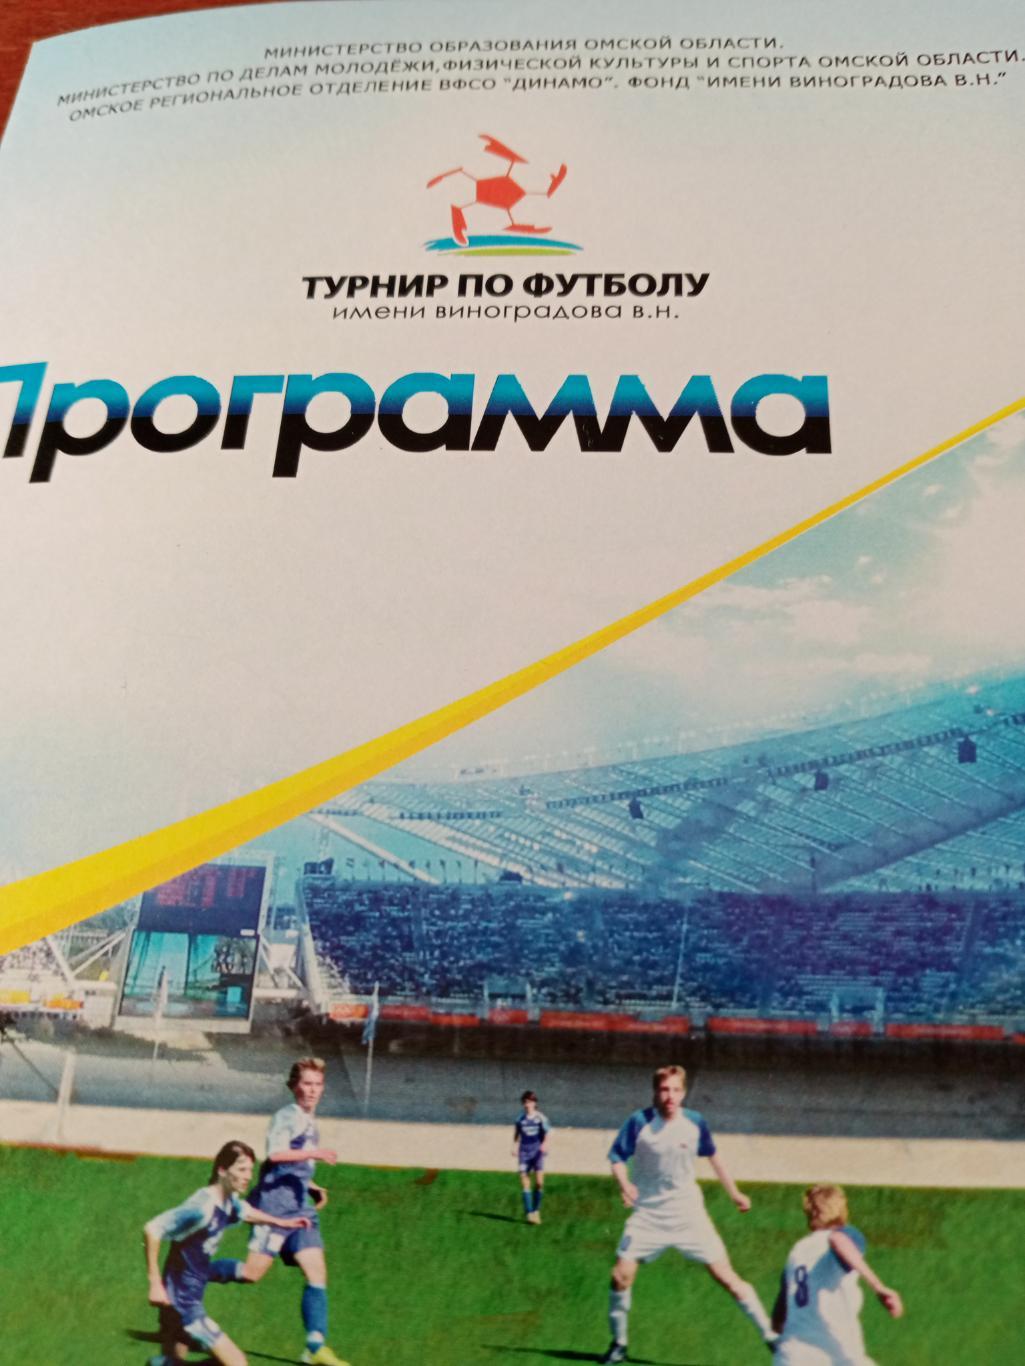 8-й юношеский турнир по футболу имени В.Виноградова. Омск - 2011 год